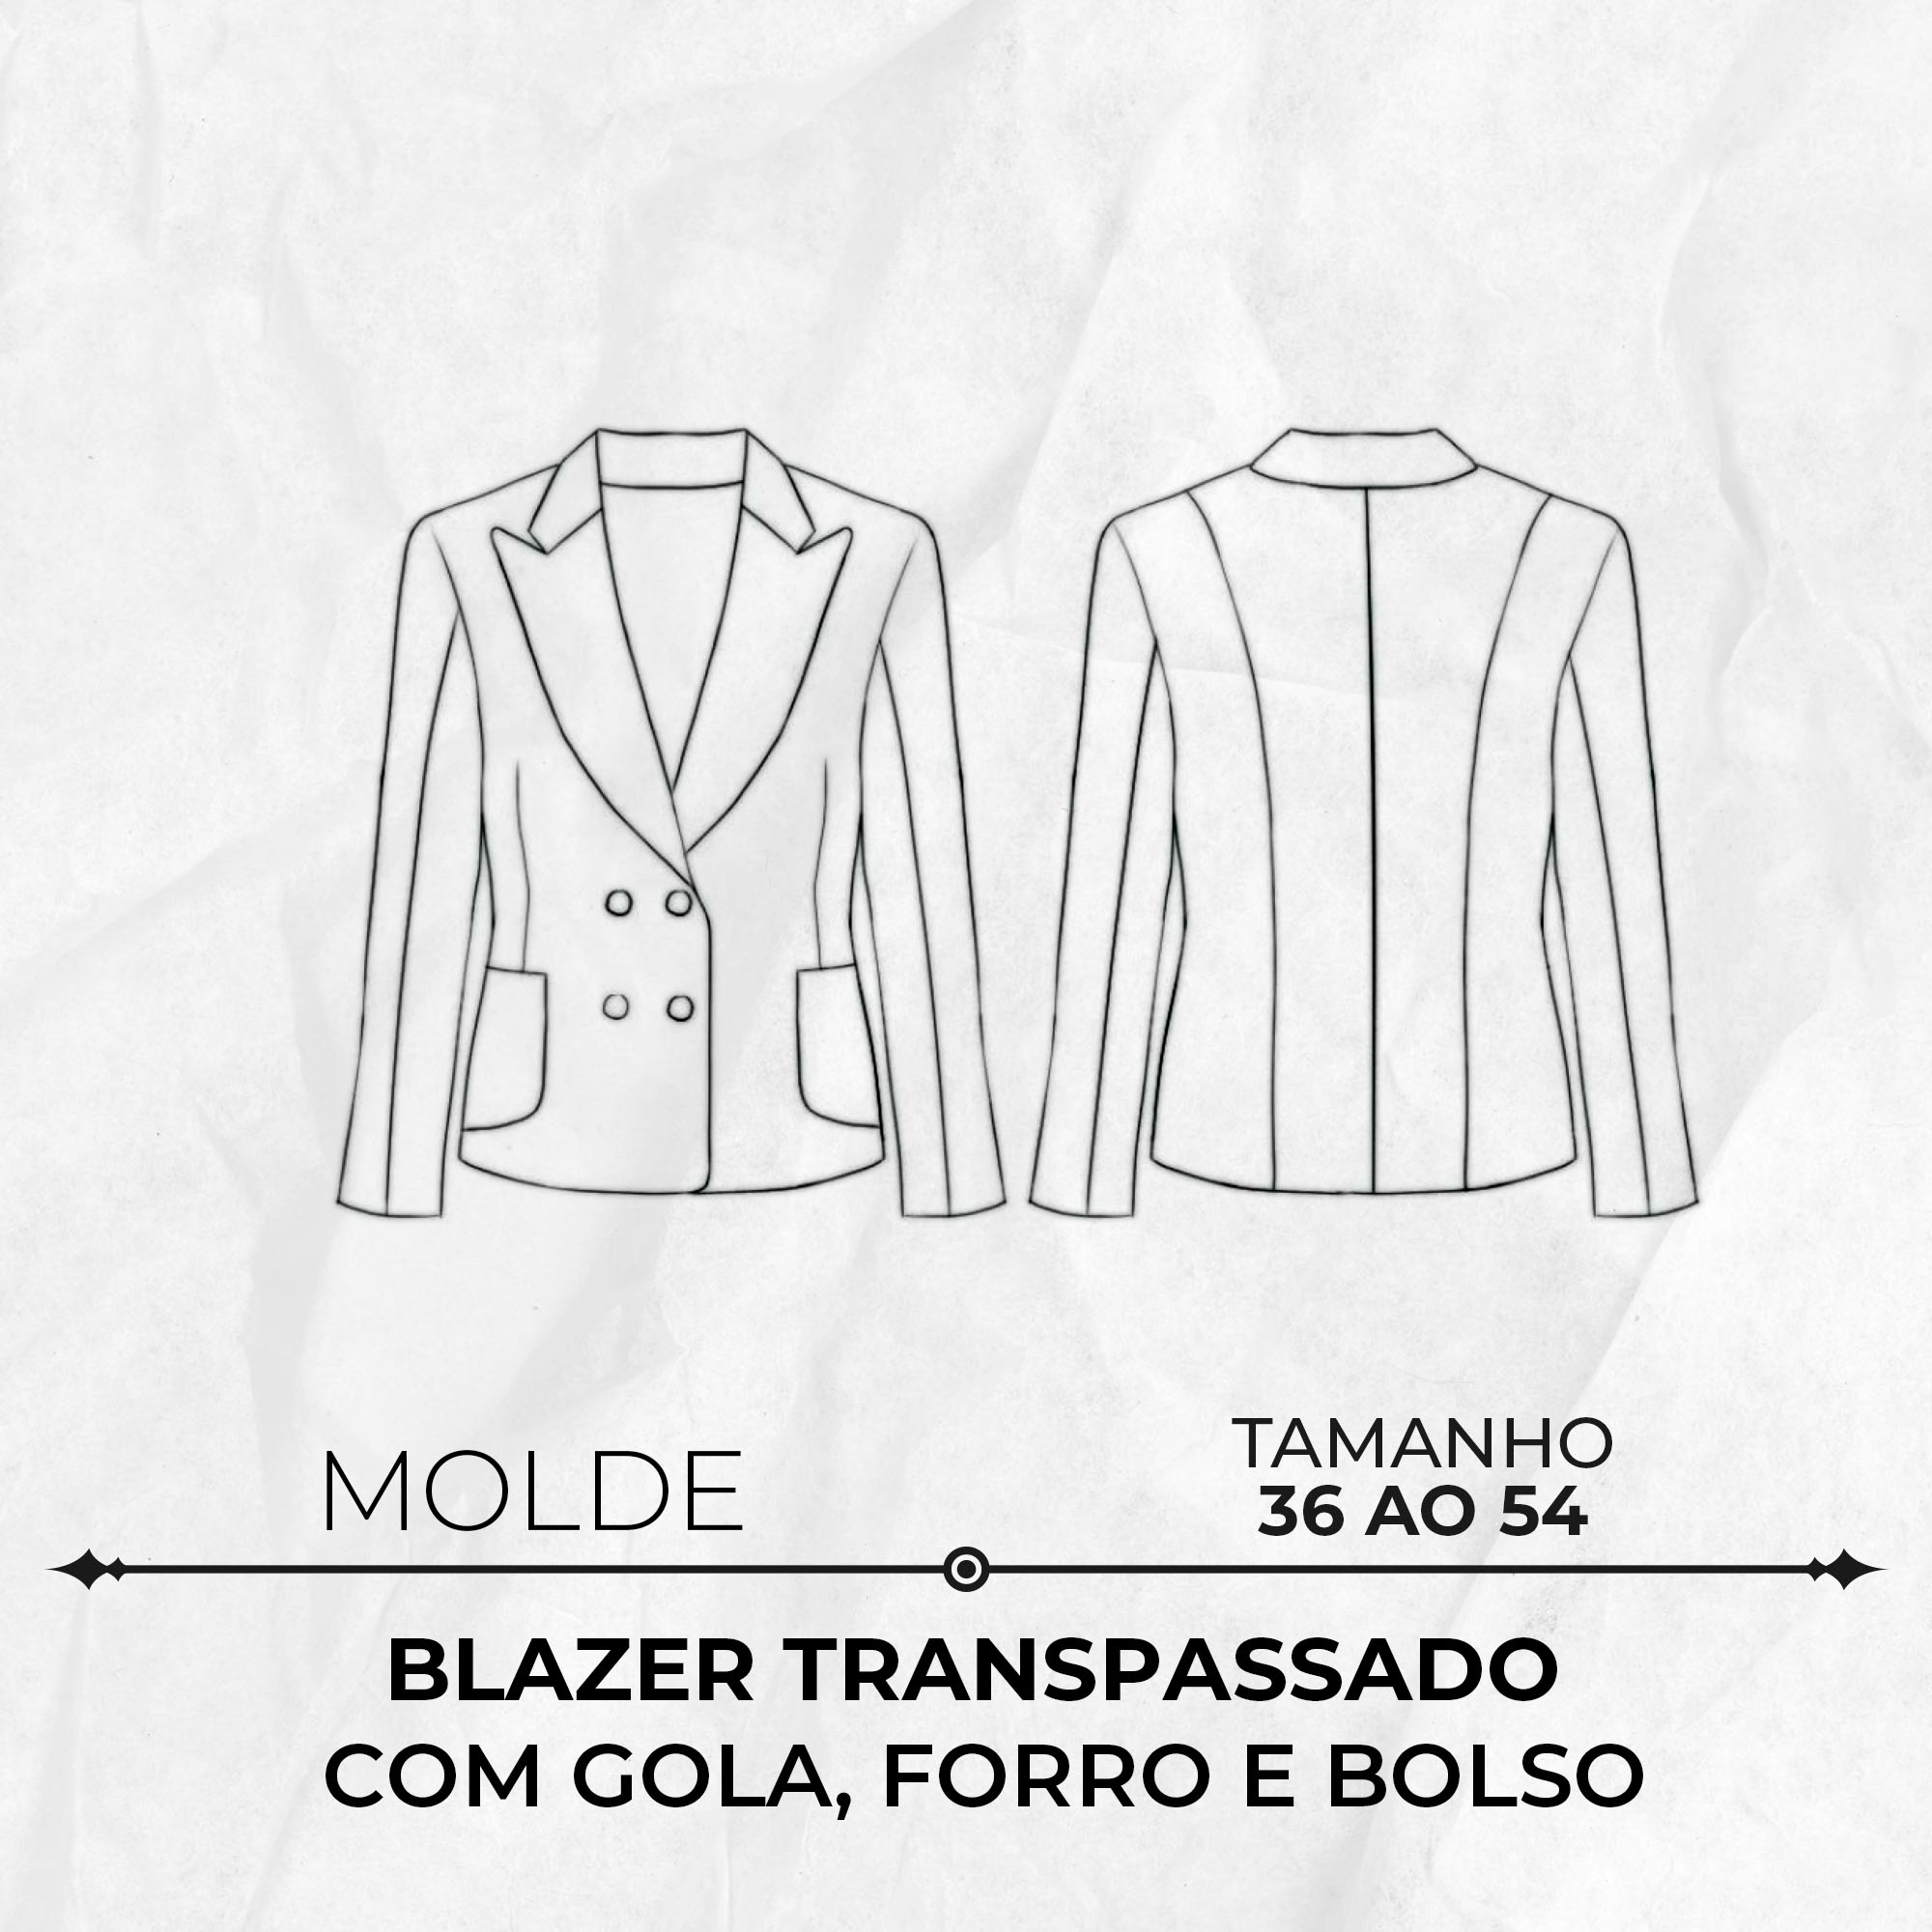 Molde blazer transpassado com gola, forro e bolso tamanho 36 ao 54 by Wania Machado